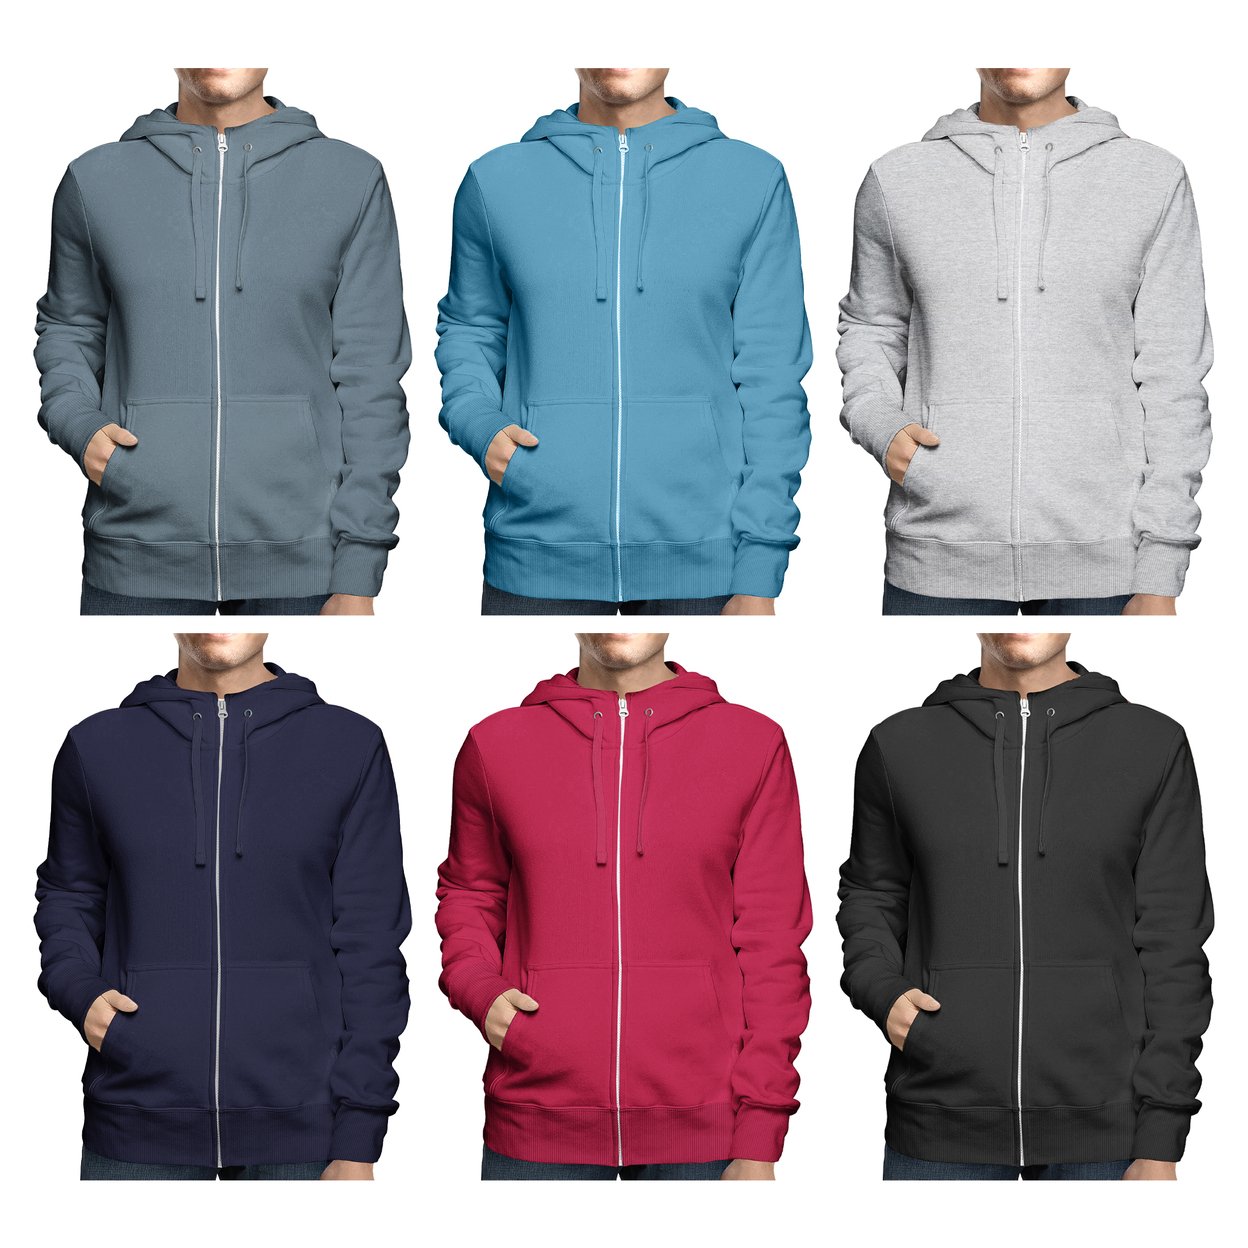 Men's Winter Warm Cozy Full Zip-Up Fleece Lined Soft Hoodie Sweatshirt - Black, Medium